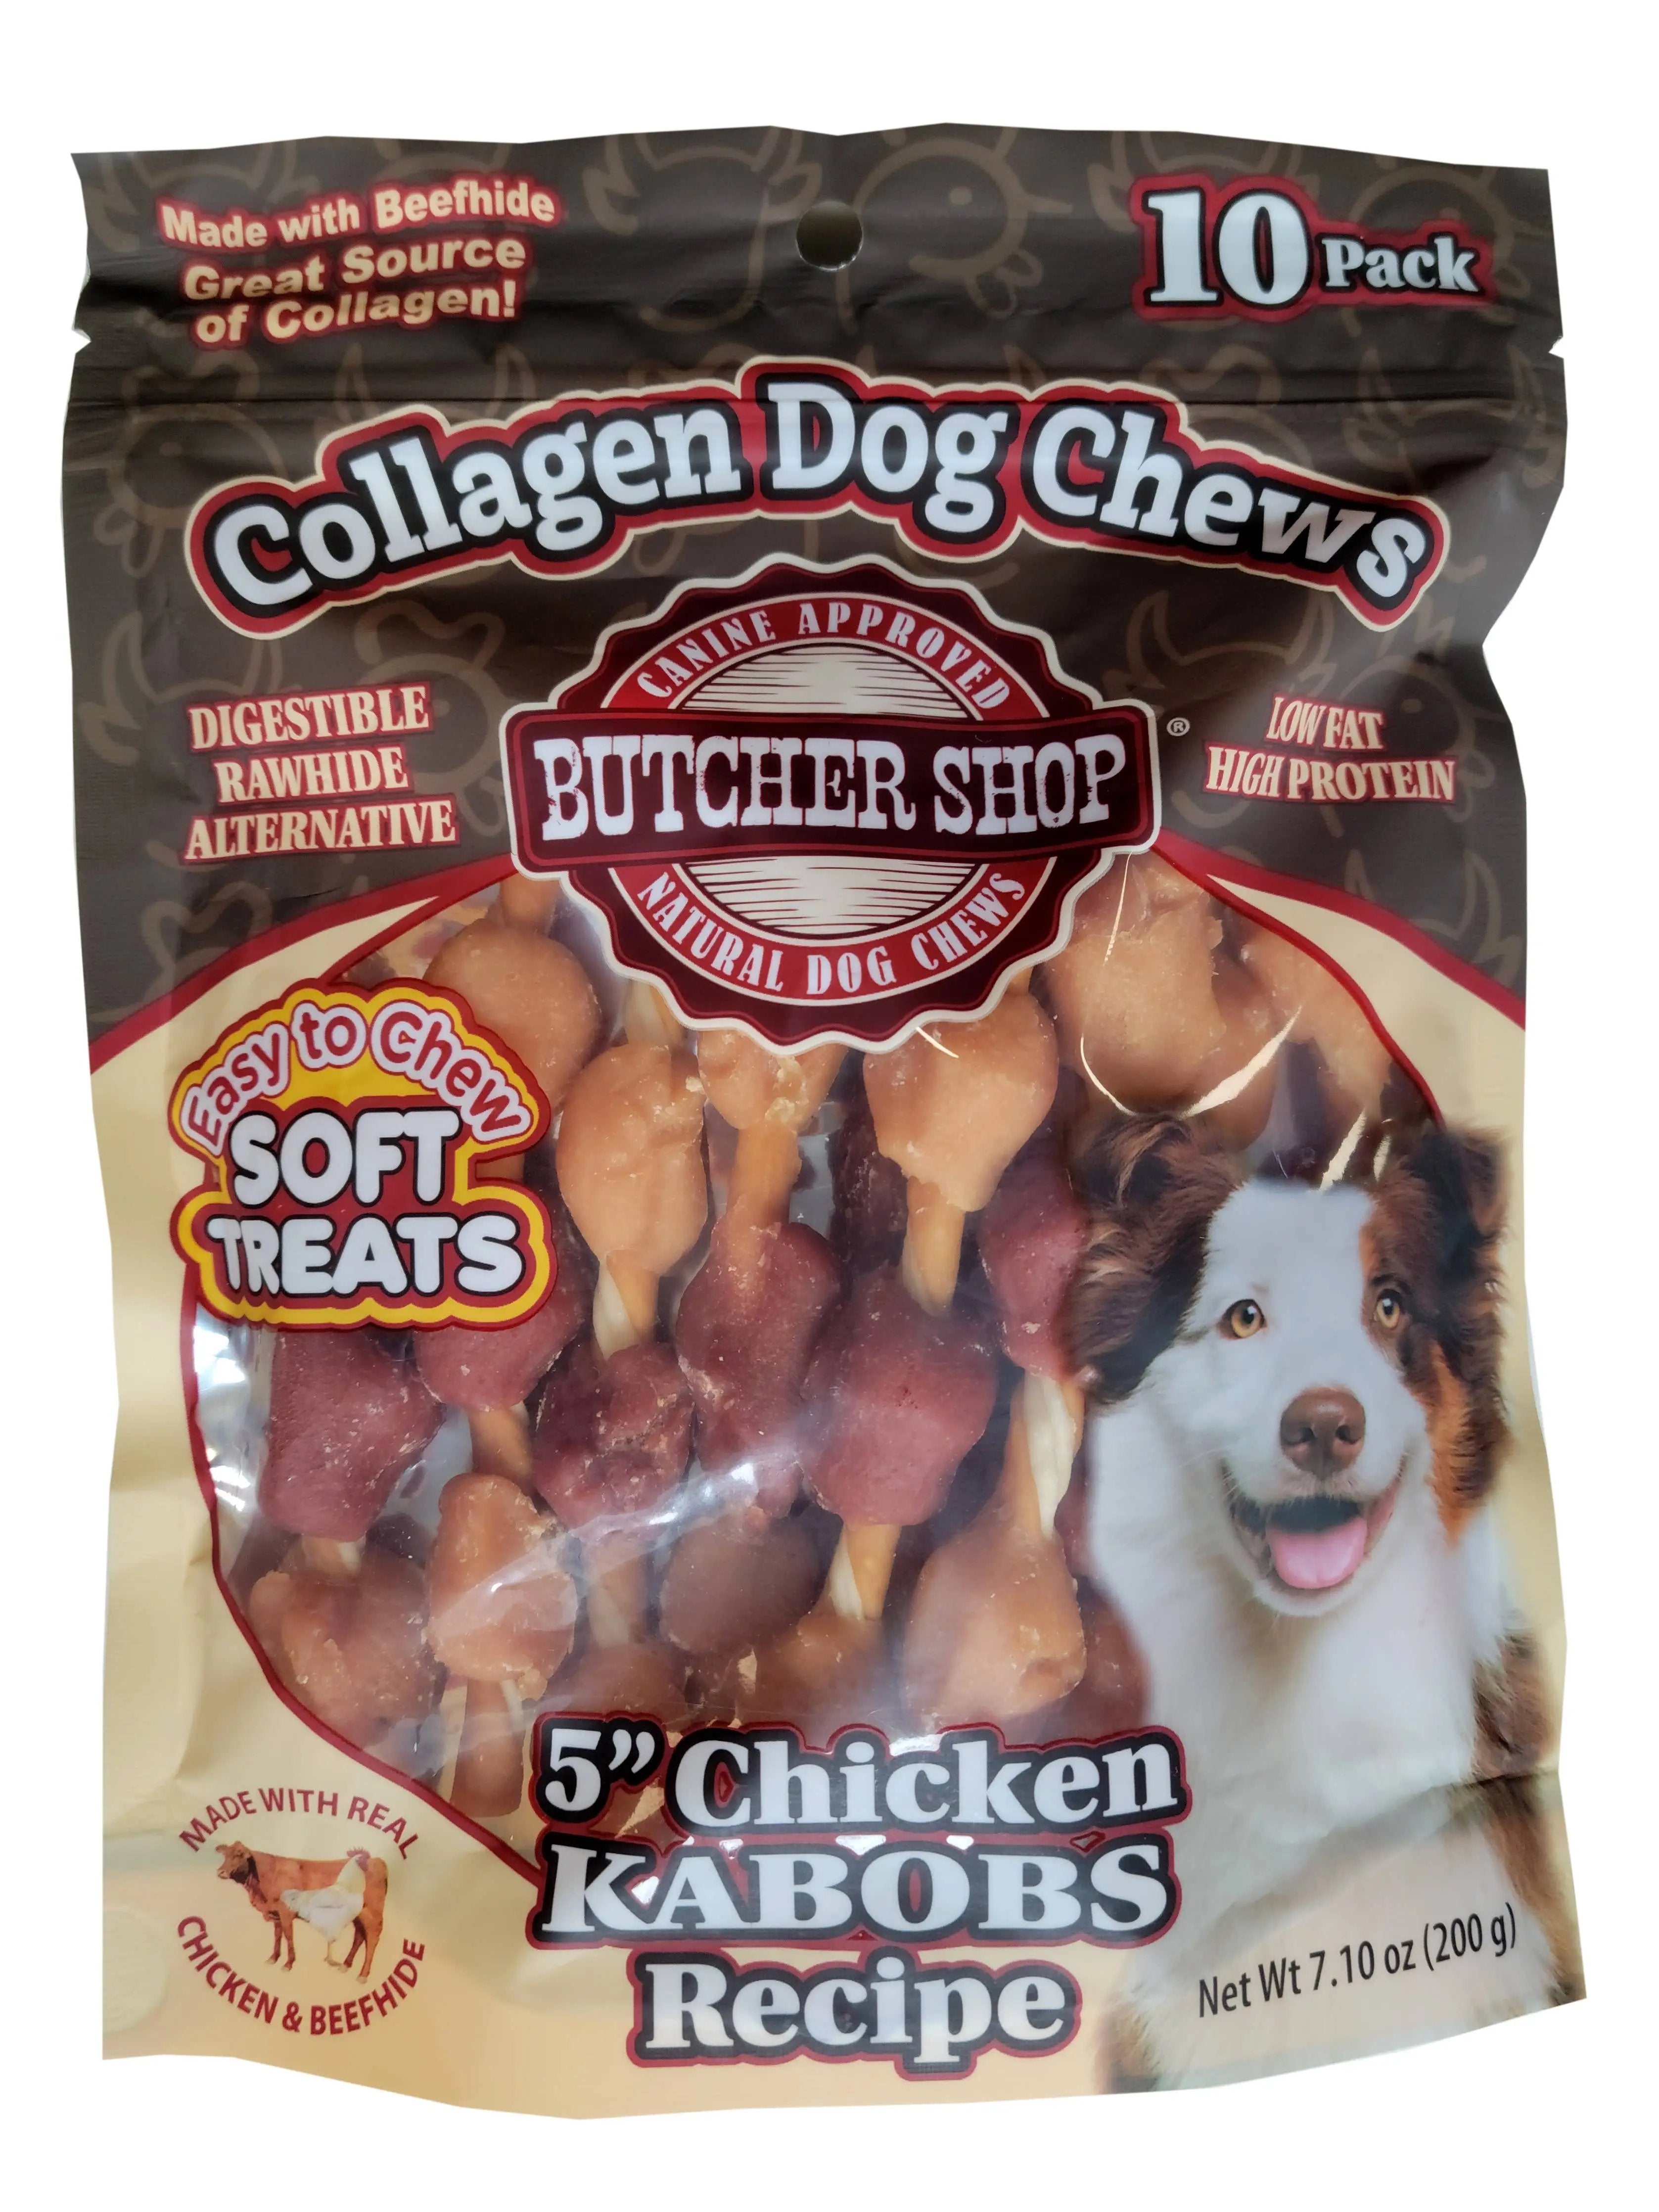 Lovin Tenders Butcher Shop Collagen Dog Chews 5" Chicken Kabobs 10-Pk